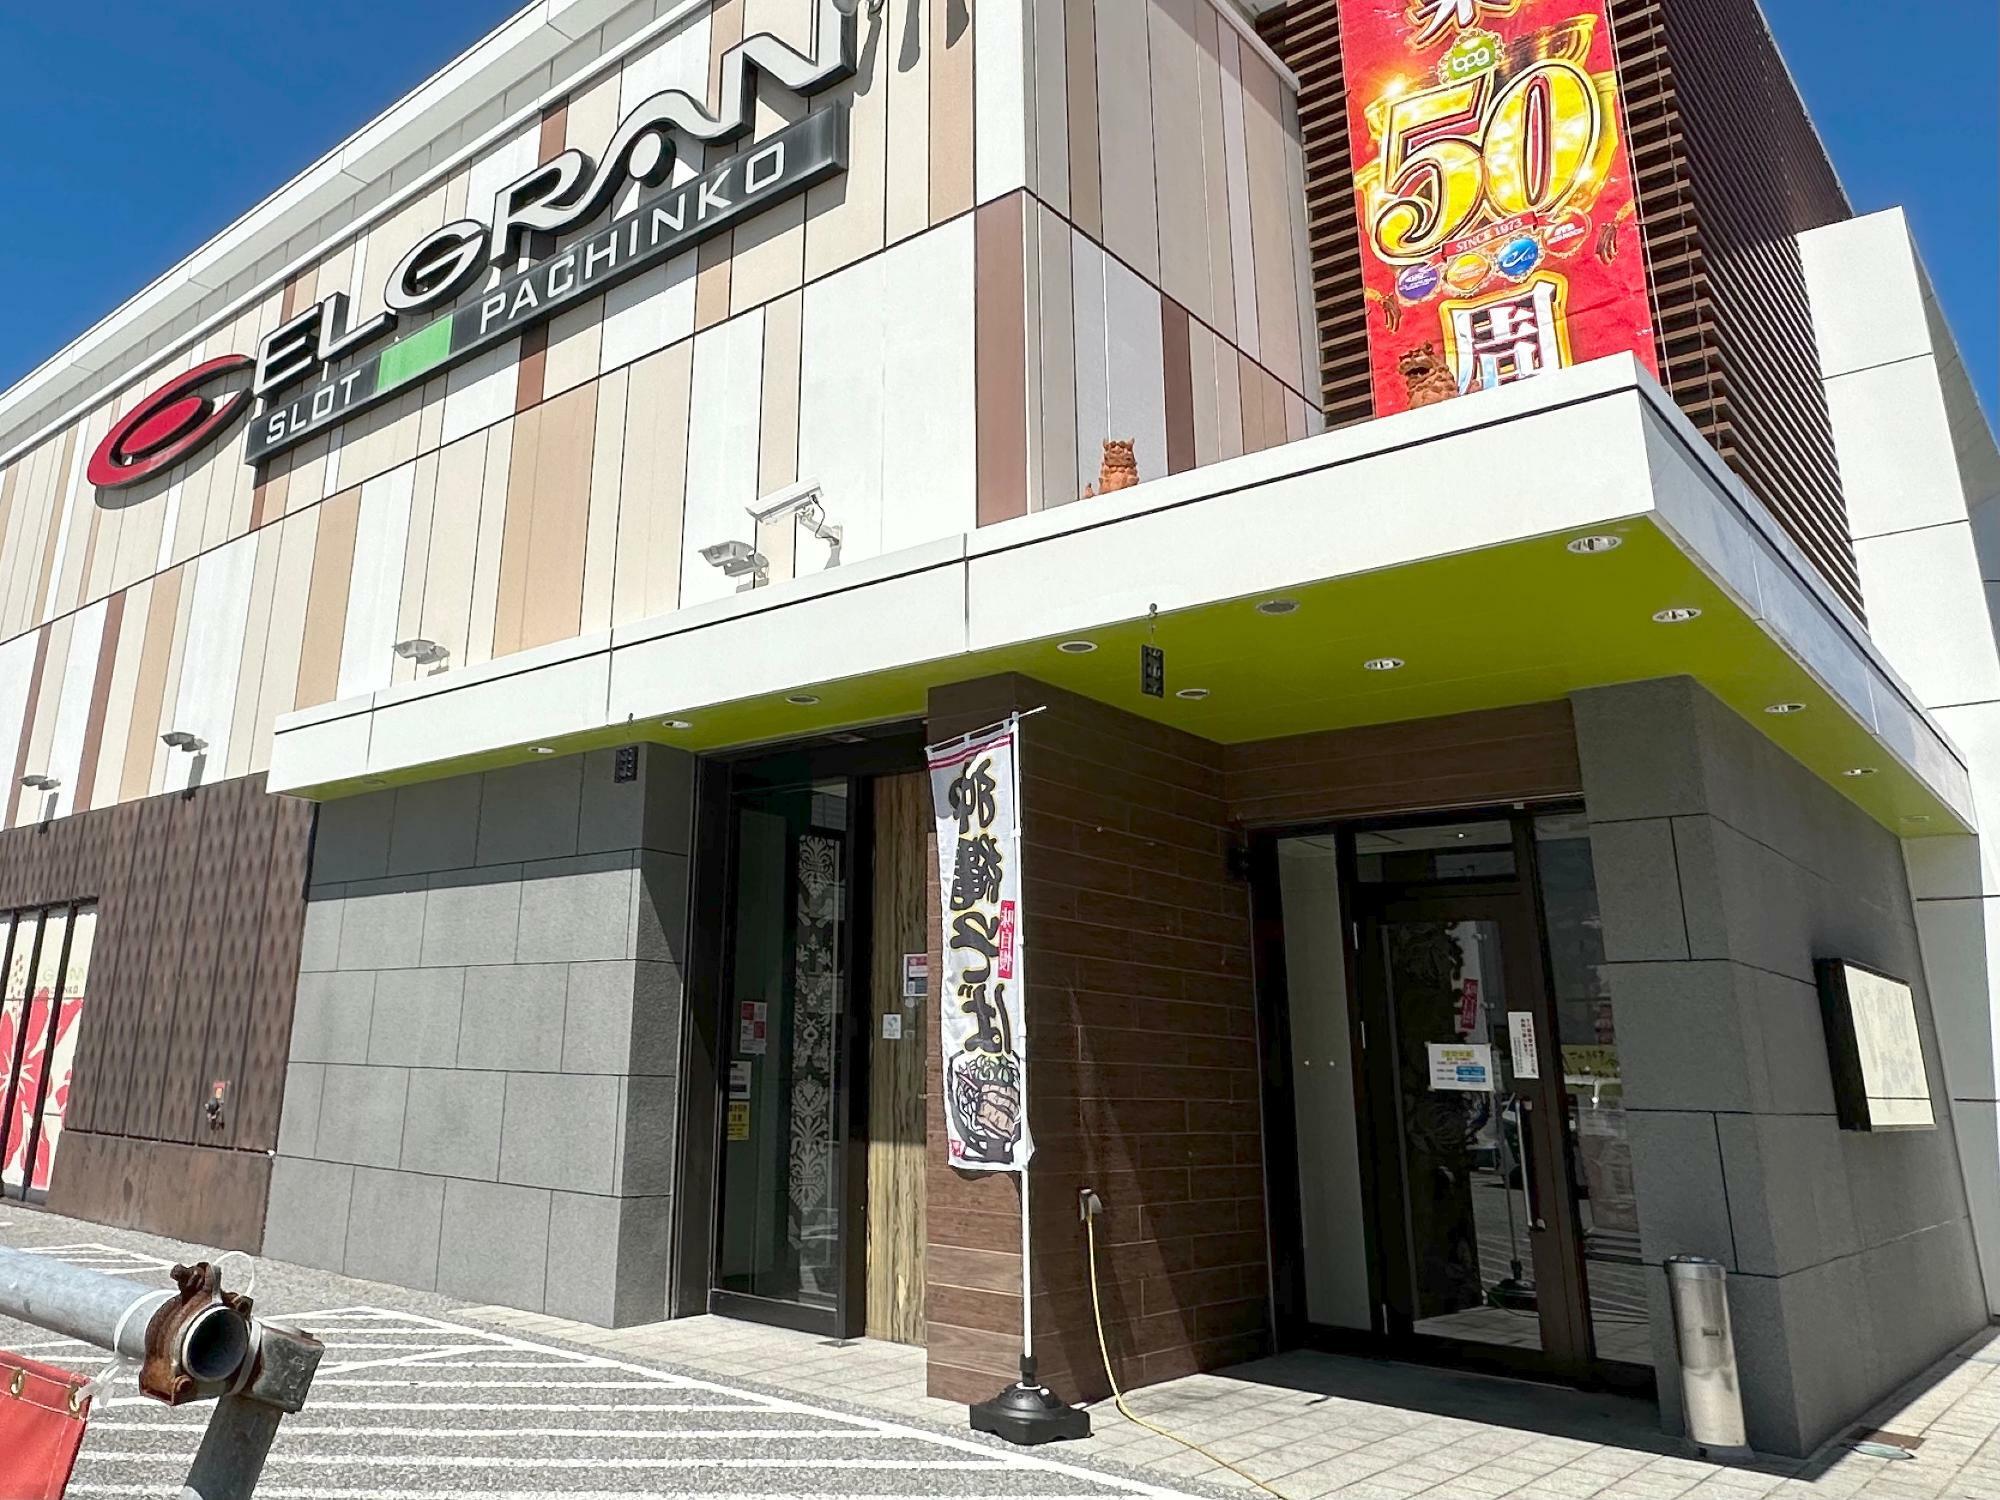 沖縄そば屋さんの入り口は右側、パチンコ店への入り口は左側と別々になっています。